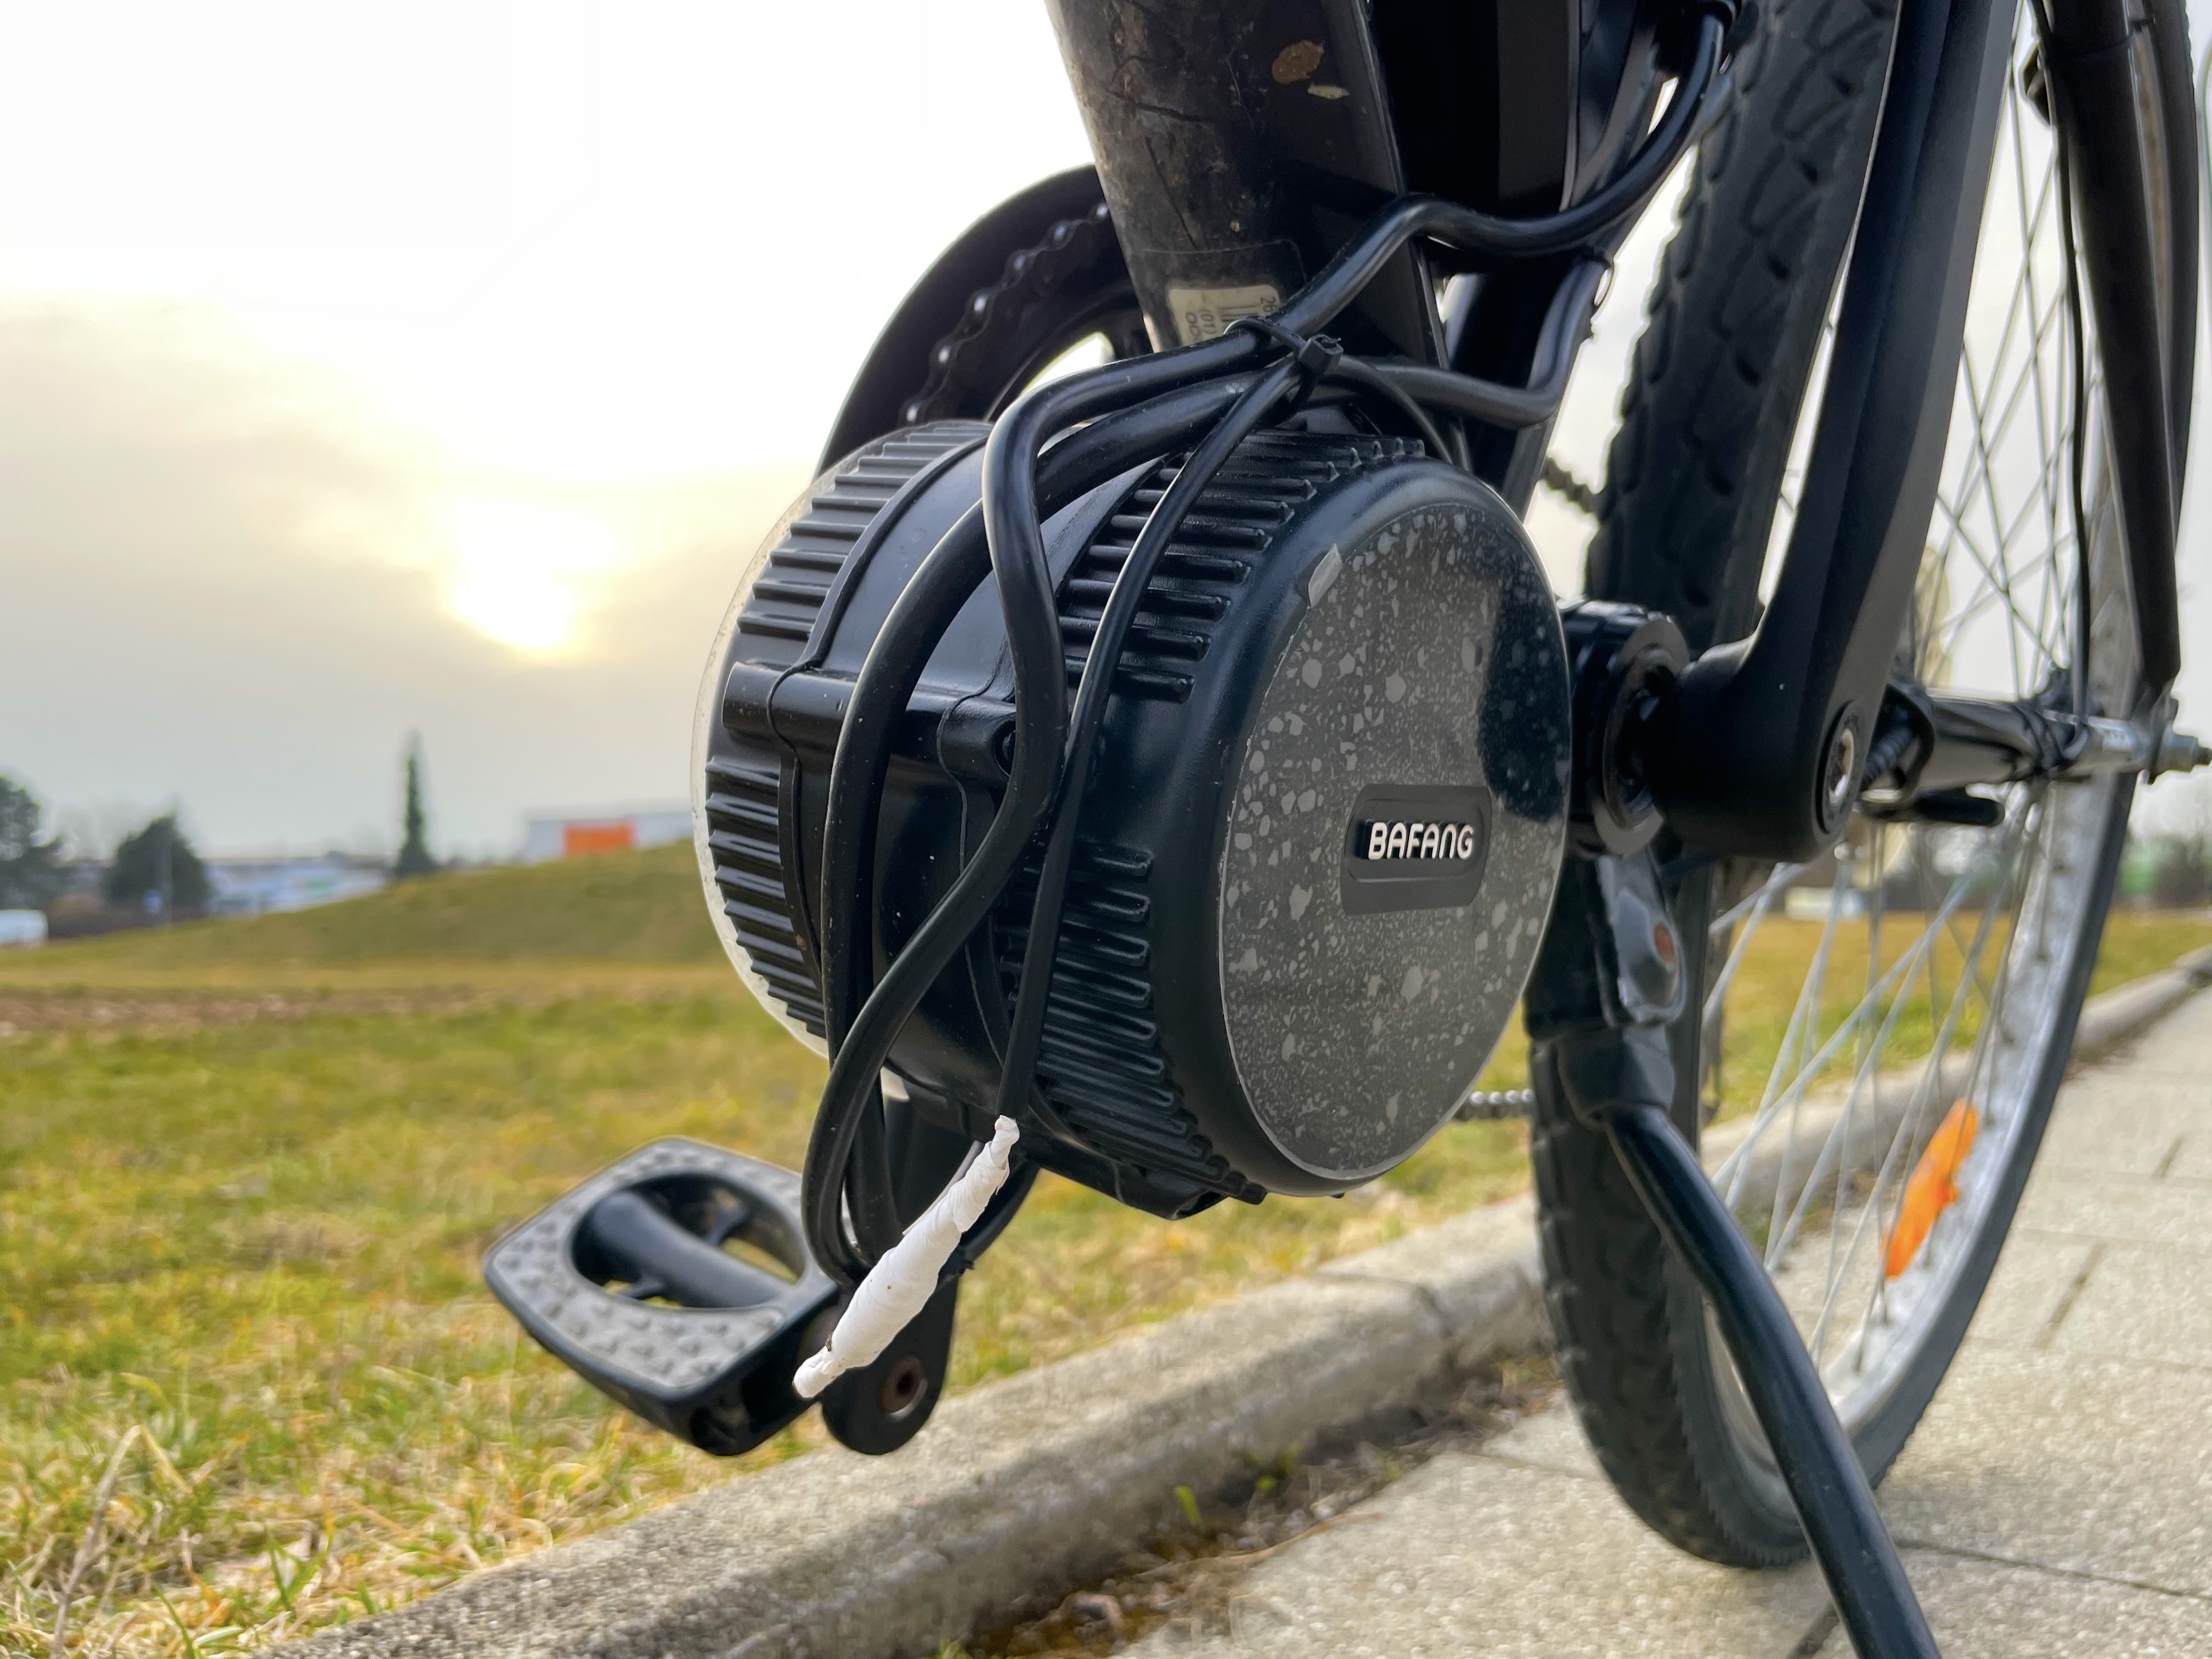 Fahrrad legal zum E-Bike umbauen: Nachrüstsatz mit Motor & Akku ab 300 Euro  | TechStage